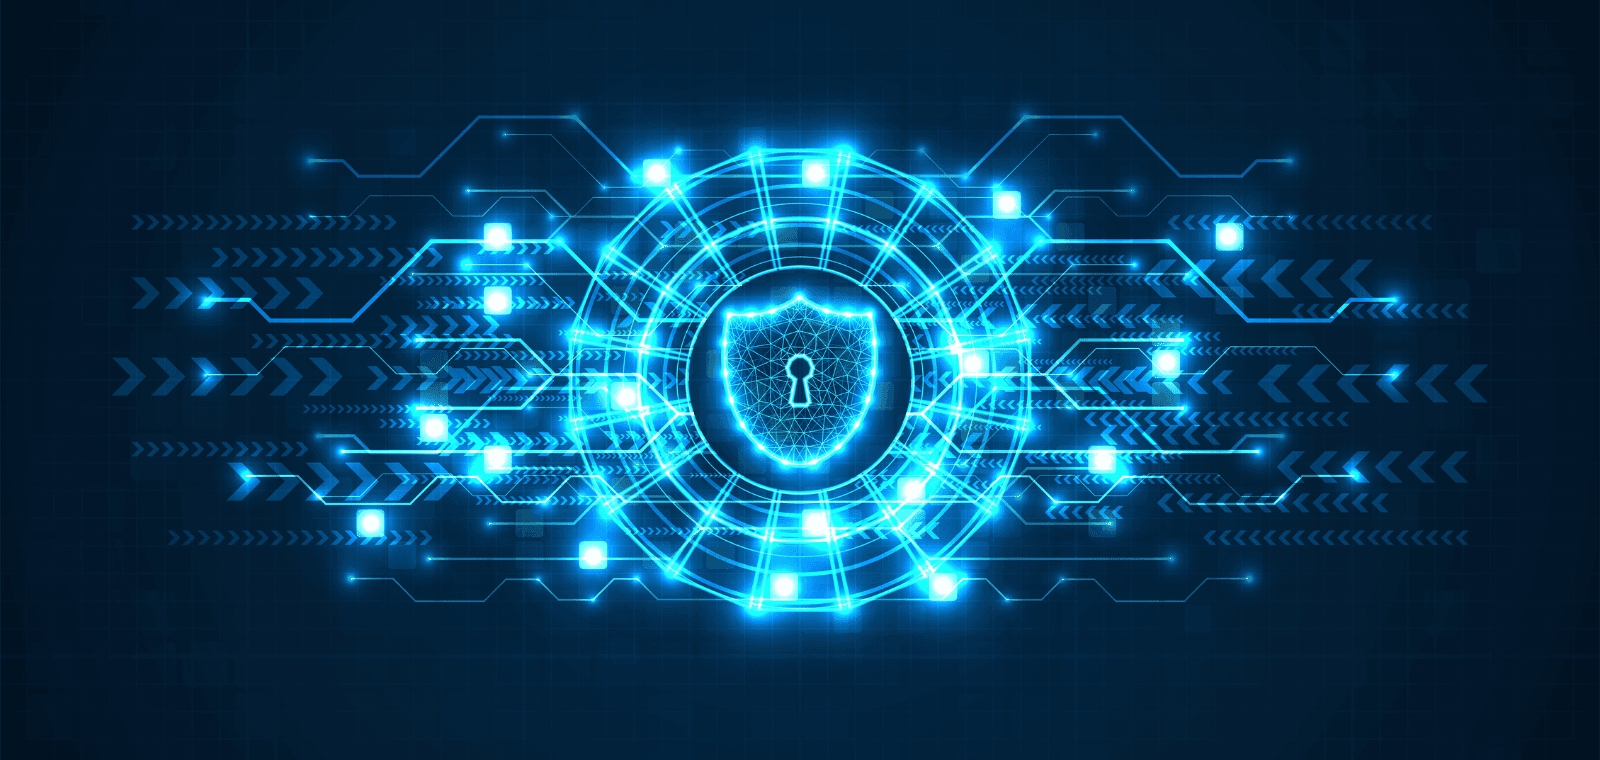 Cybersécurité industrielle : à quelles menaces faut-il s’attendre en 2022 et comment vous en prémunir ?